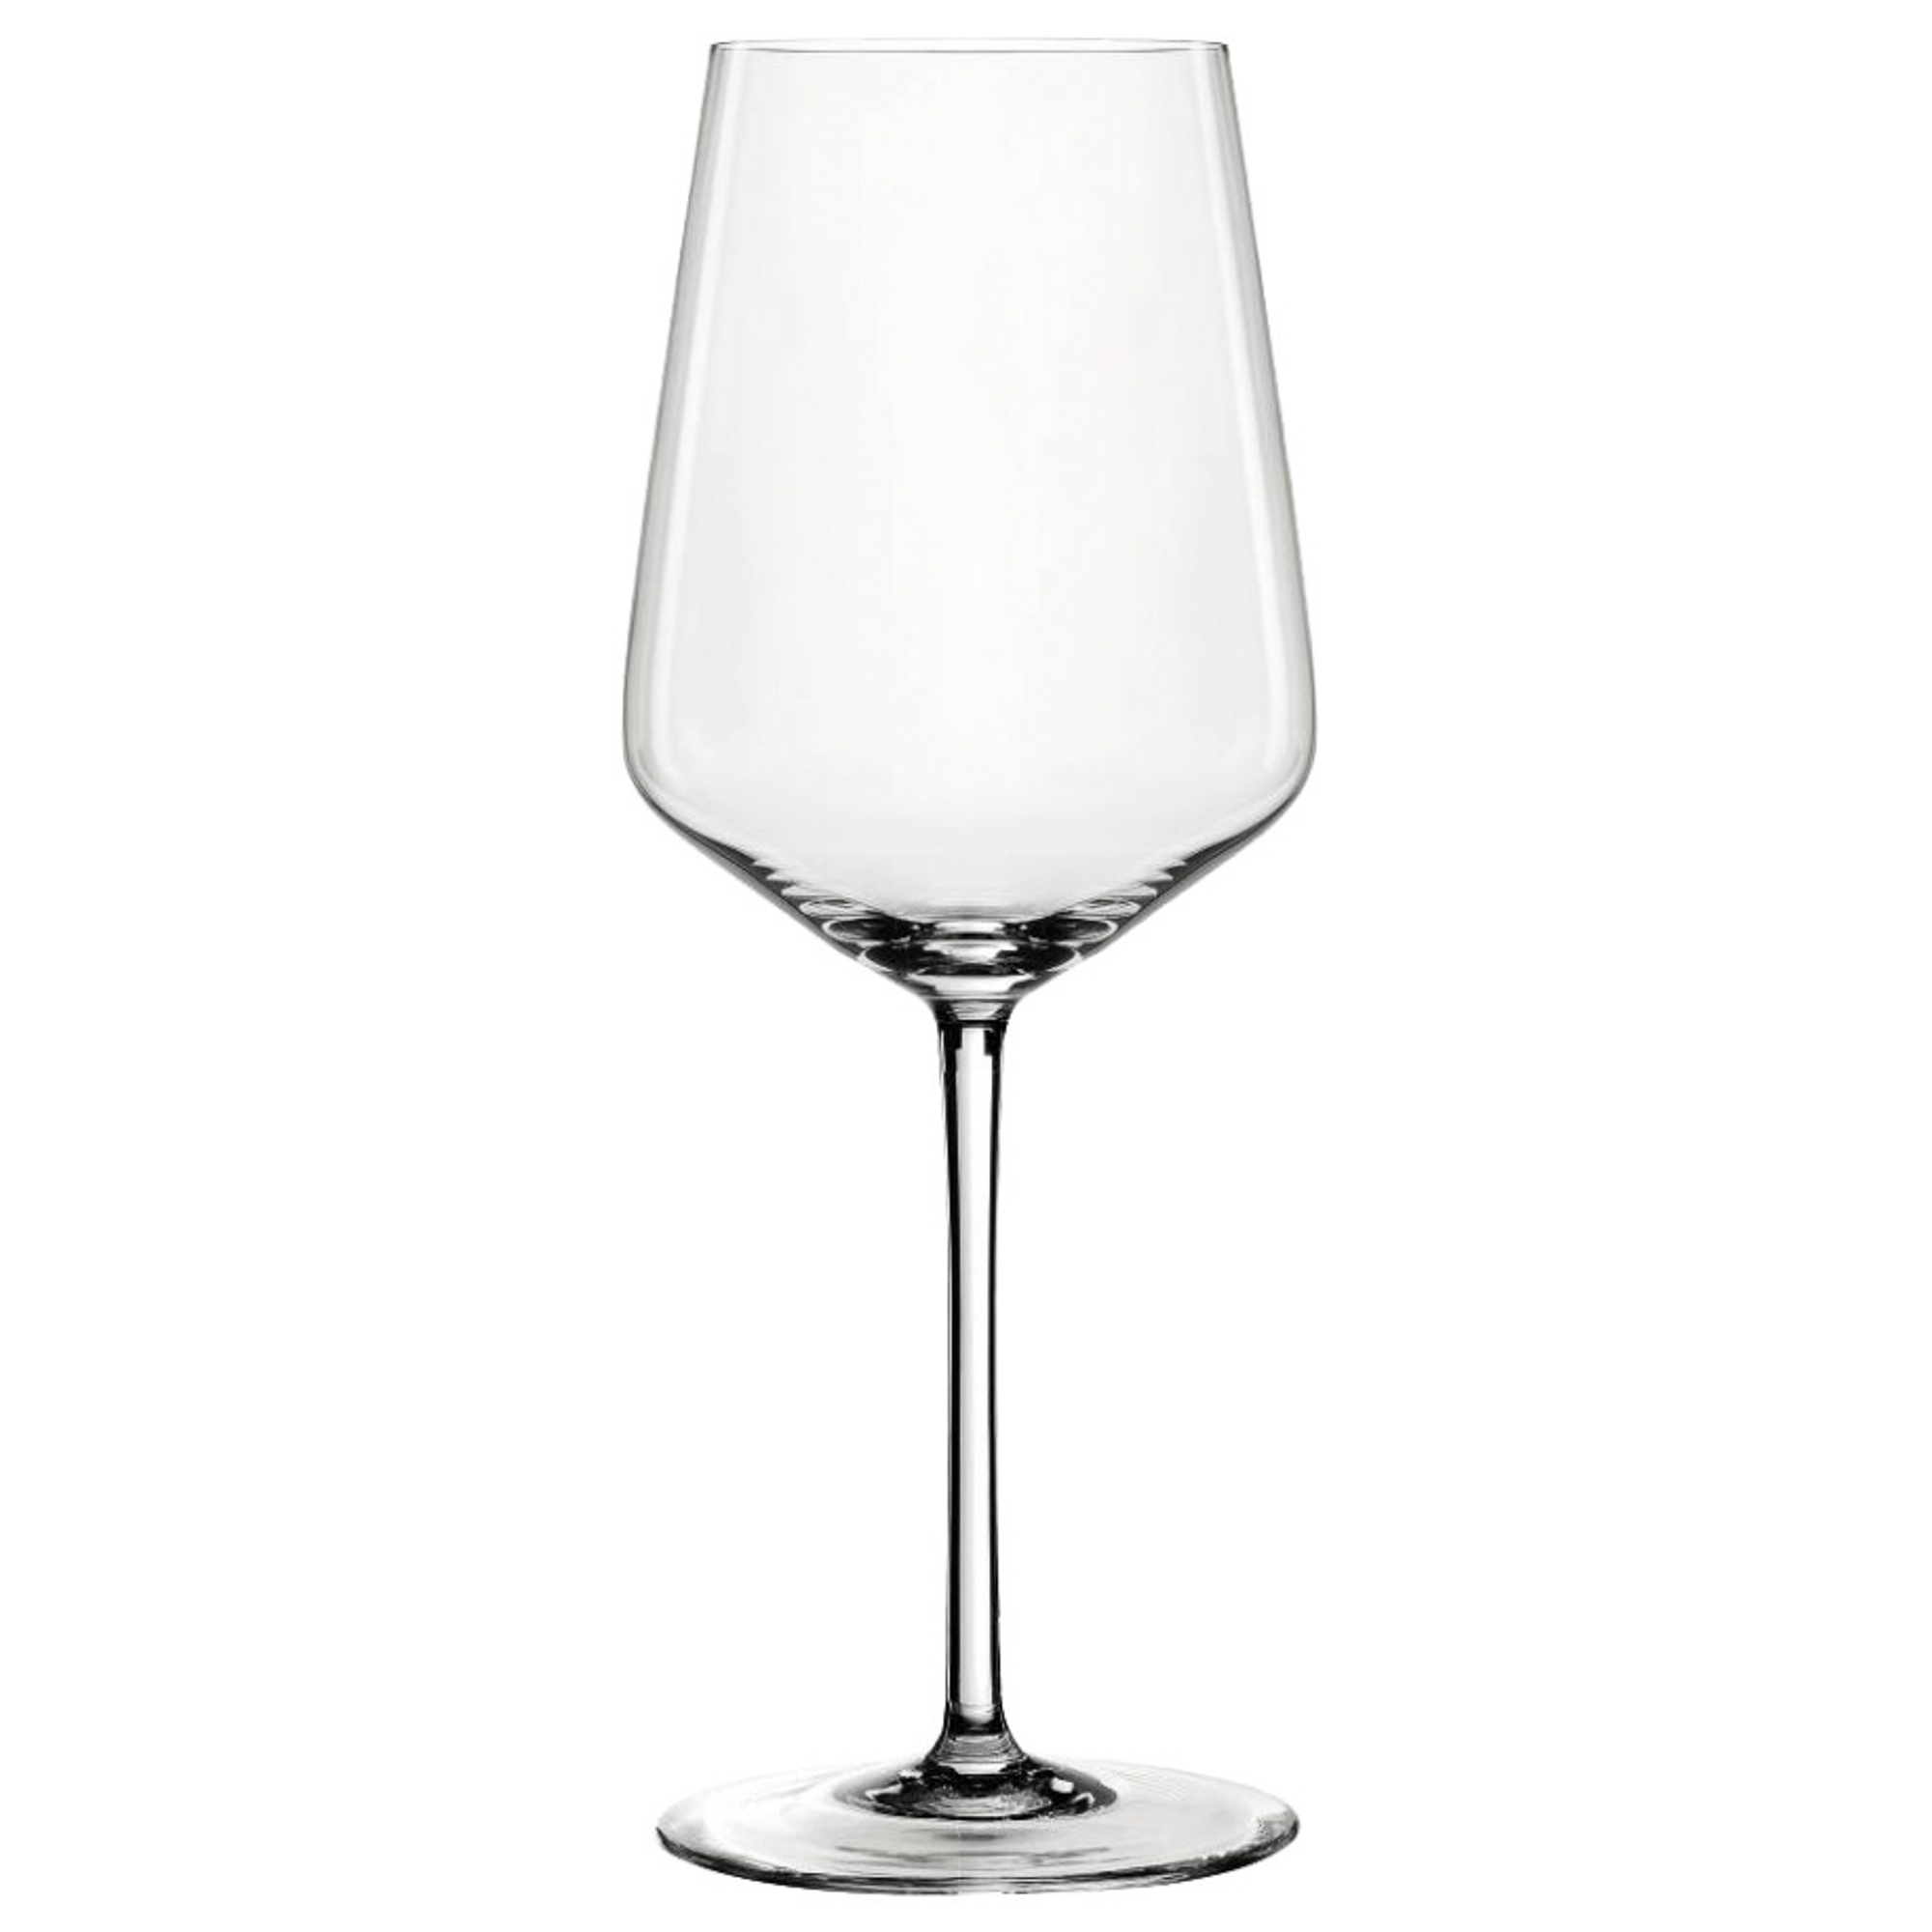 Бокалы Spiegelau Style White Wine 440 мл 2 шт бокалы для бордо spiegelau salute 710 мл 4 шт